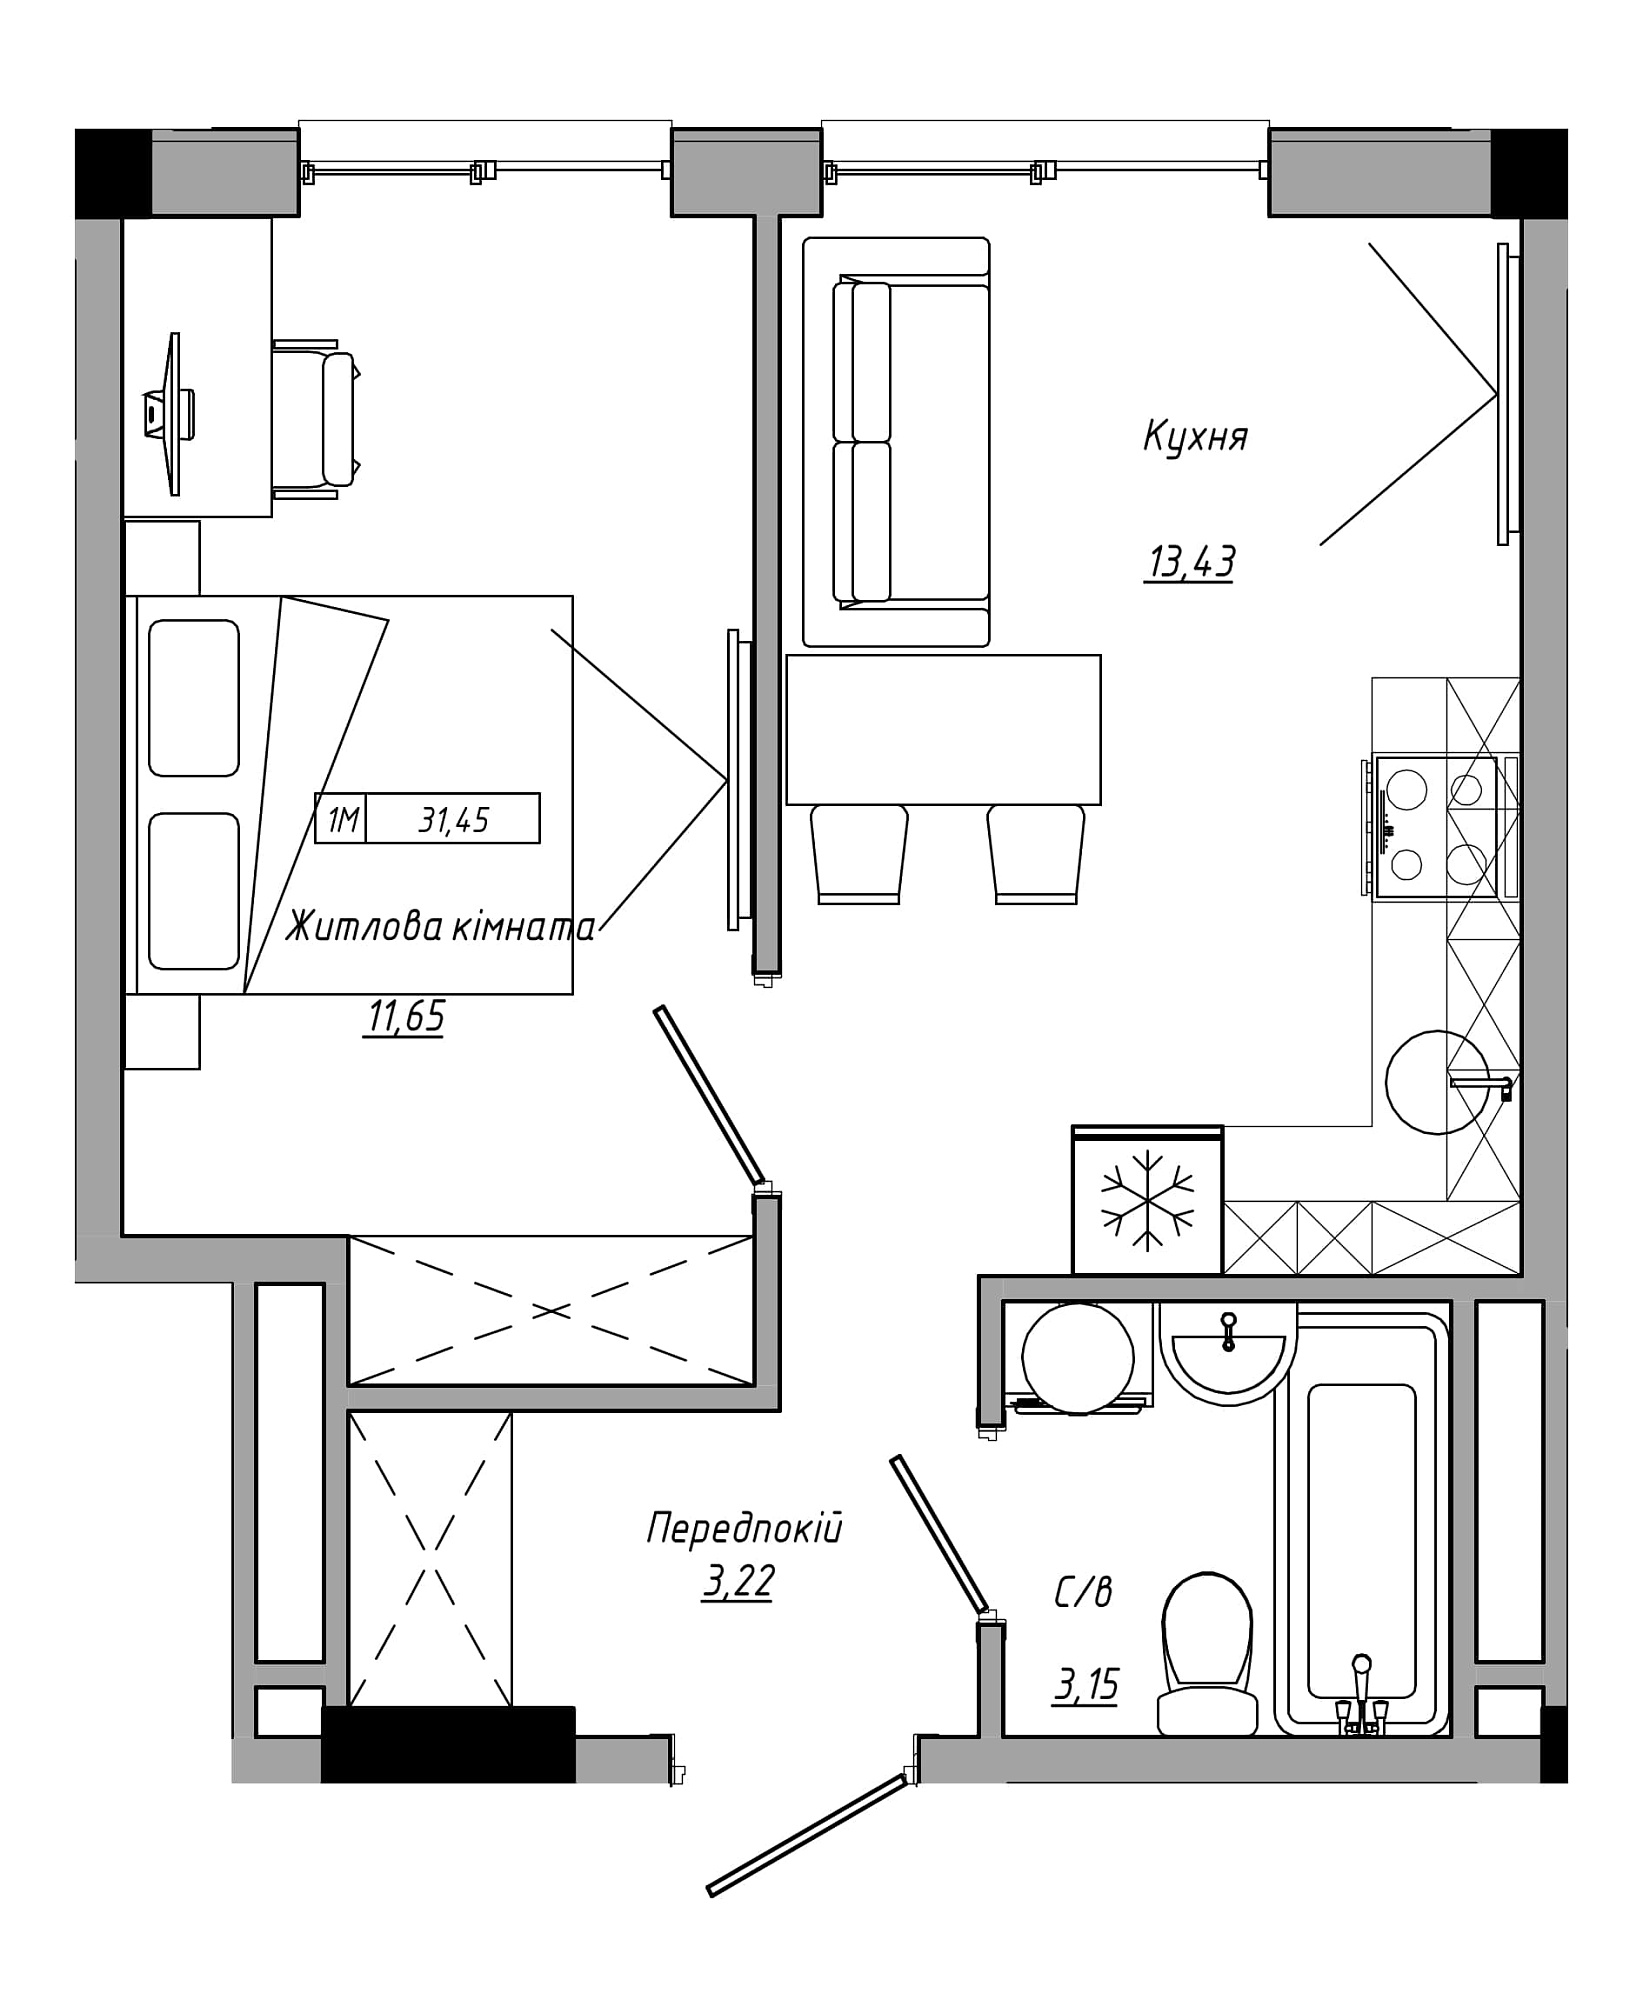 Планування 1-к квартира площею 31.45м2, AB-21-10/00015.